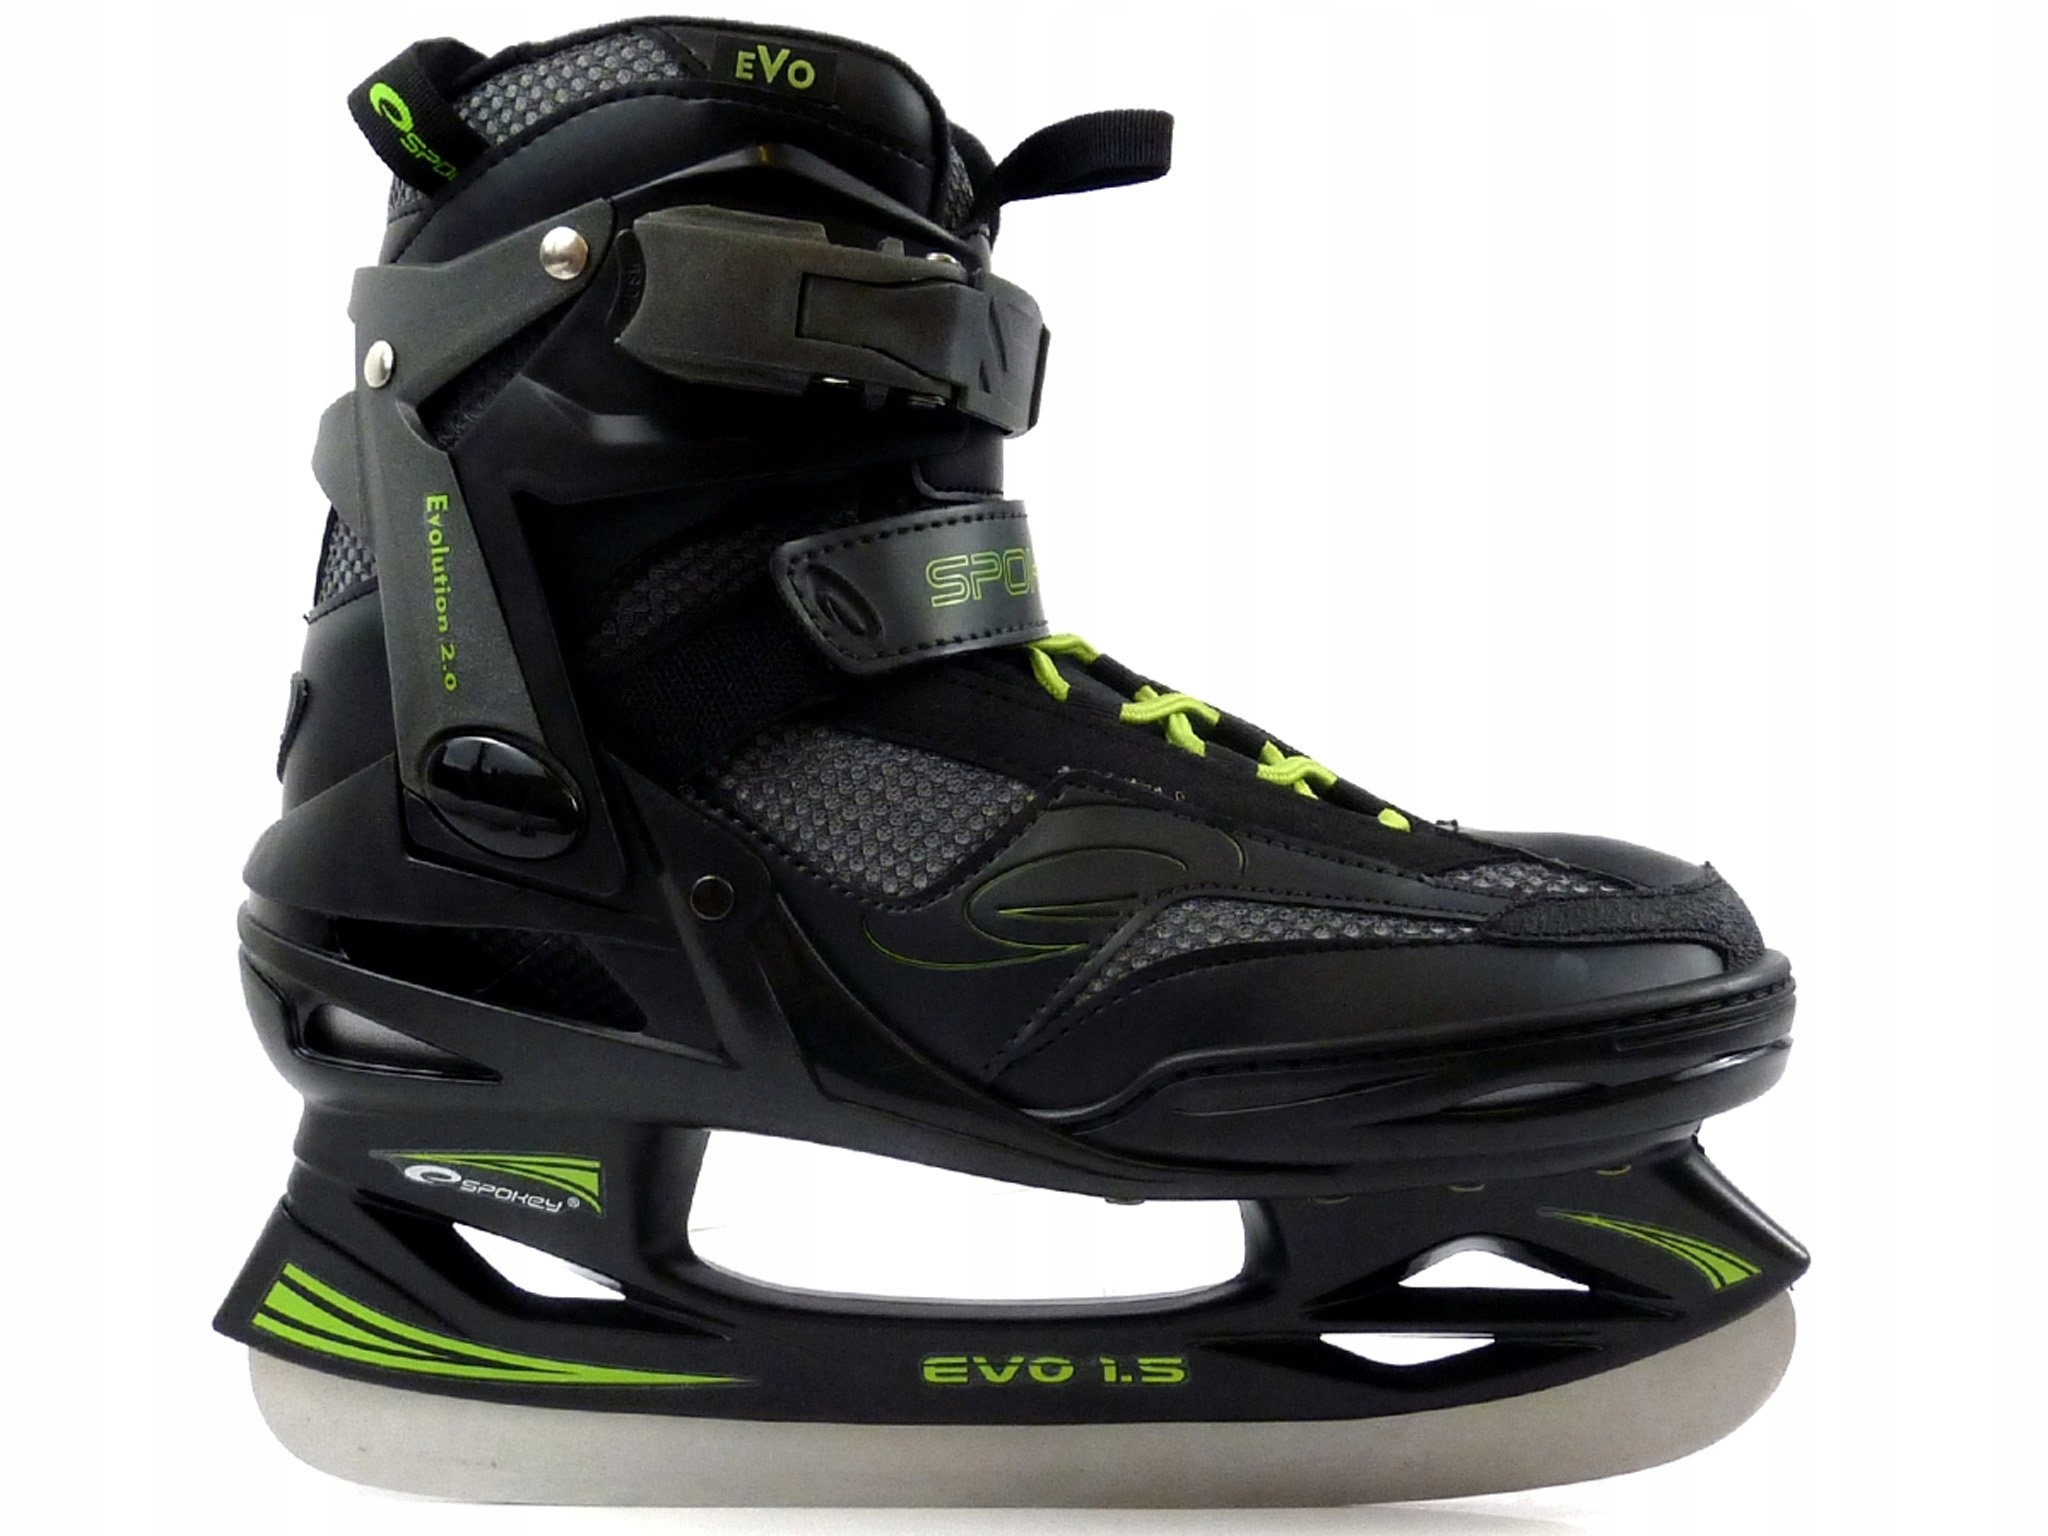 Хоккейные коньки SPOKEY EVO 1.5 хоккейные ботинки размер 38